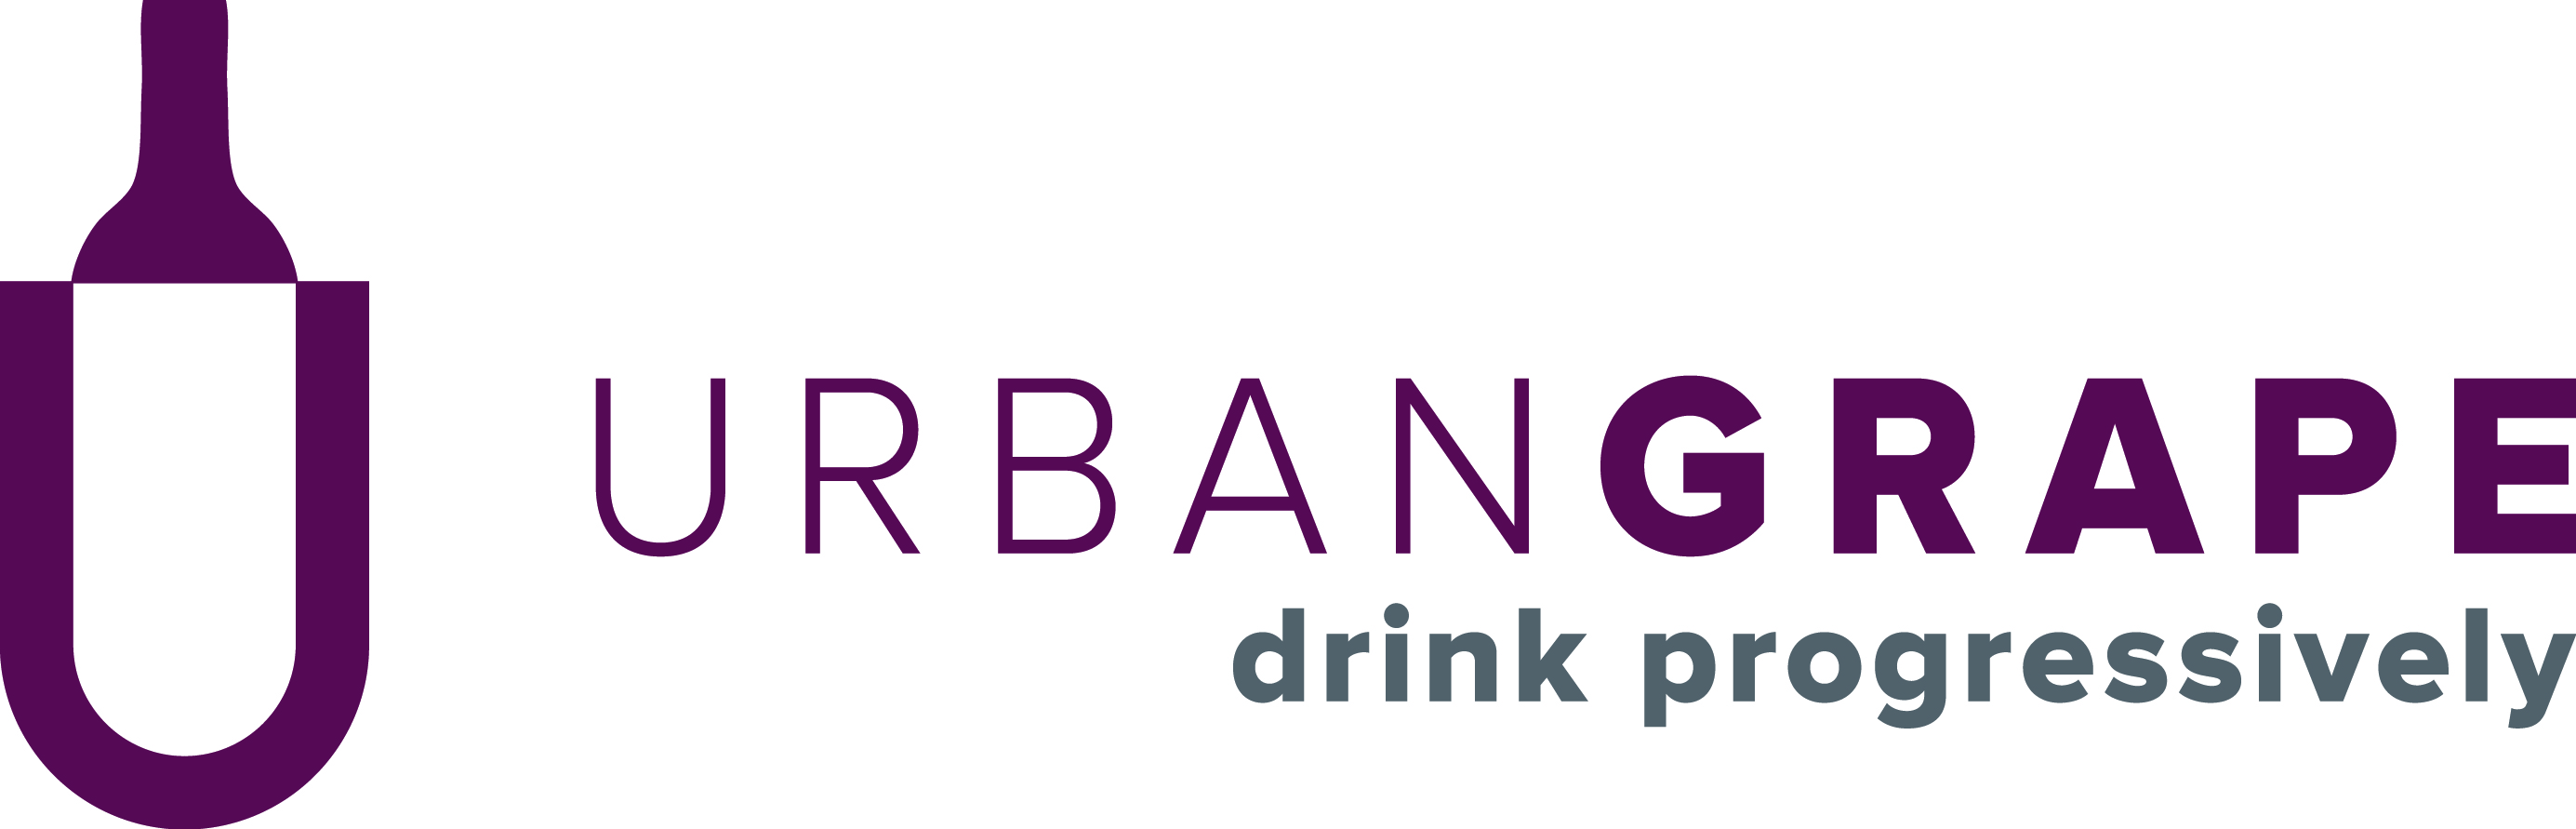 UrbanGrape-logo.jpg